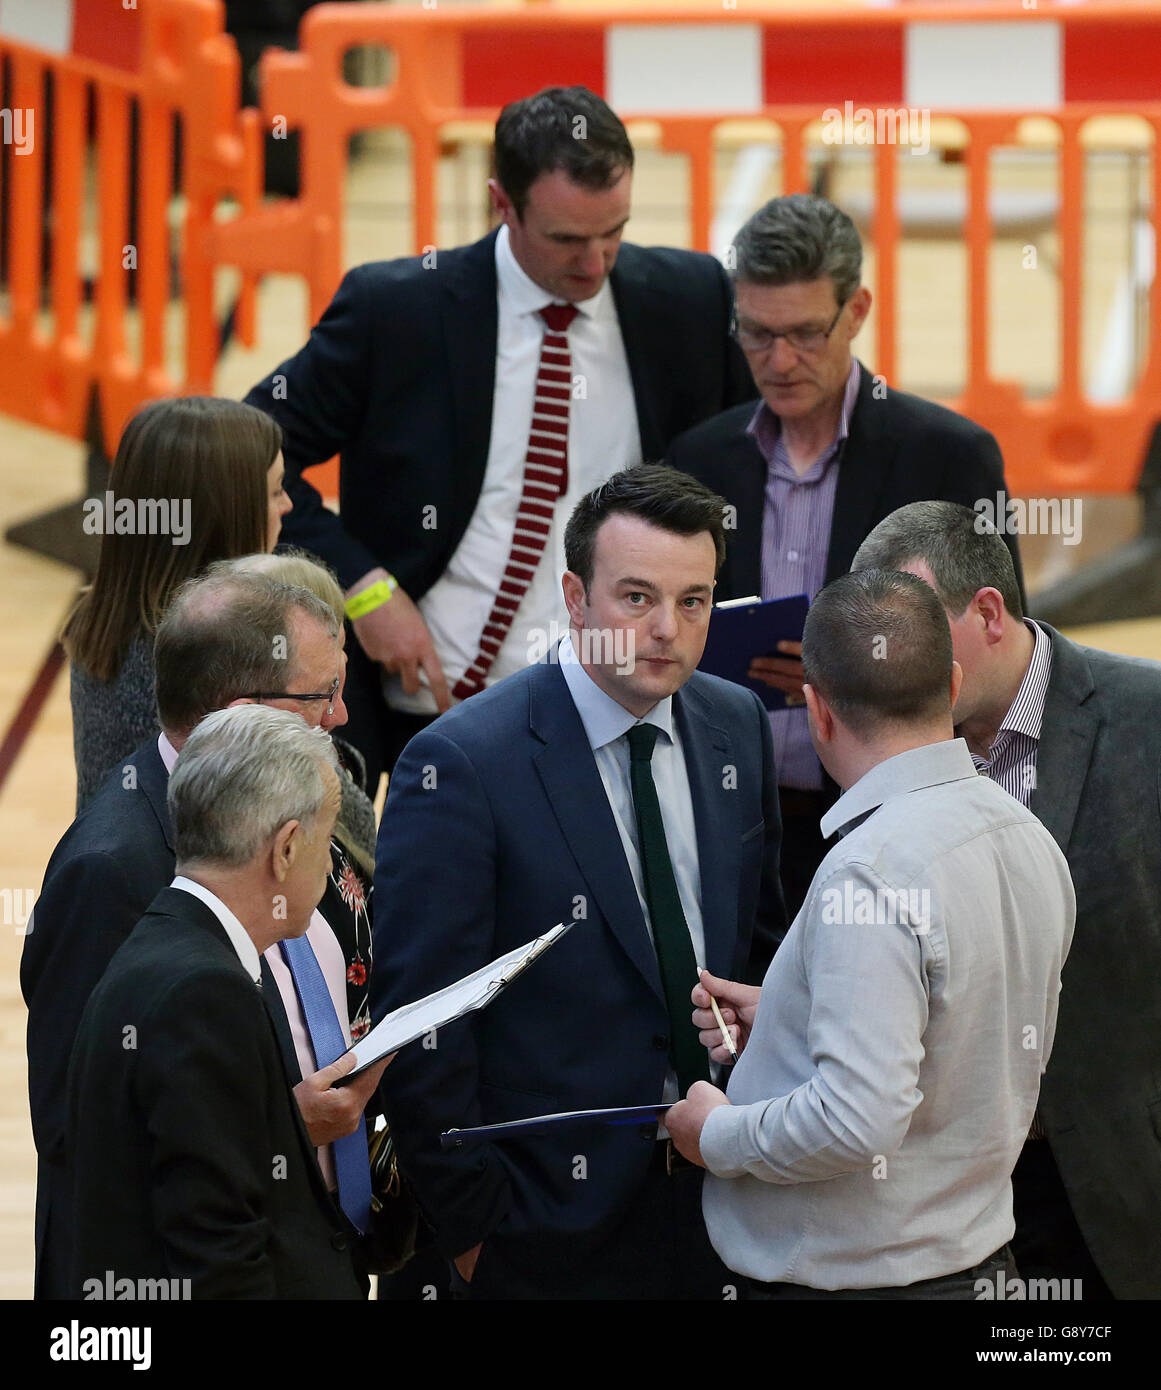 SDLP leader Colum Eastwood (avanti), mentre il conteggio dei voti continua alla Foyle Arena di Londonderry, nelle circoscrizioni di Foyle e di East Londonderry, nelle elezioni dell'Assemblea dell'Irlanda del Nord. Foto Stock